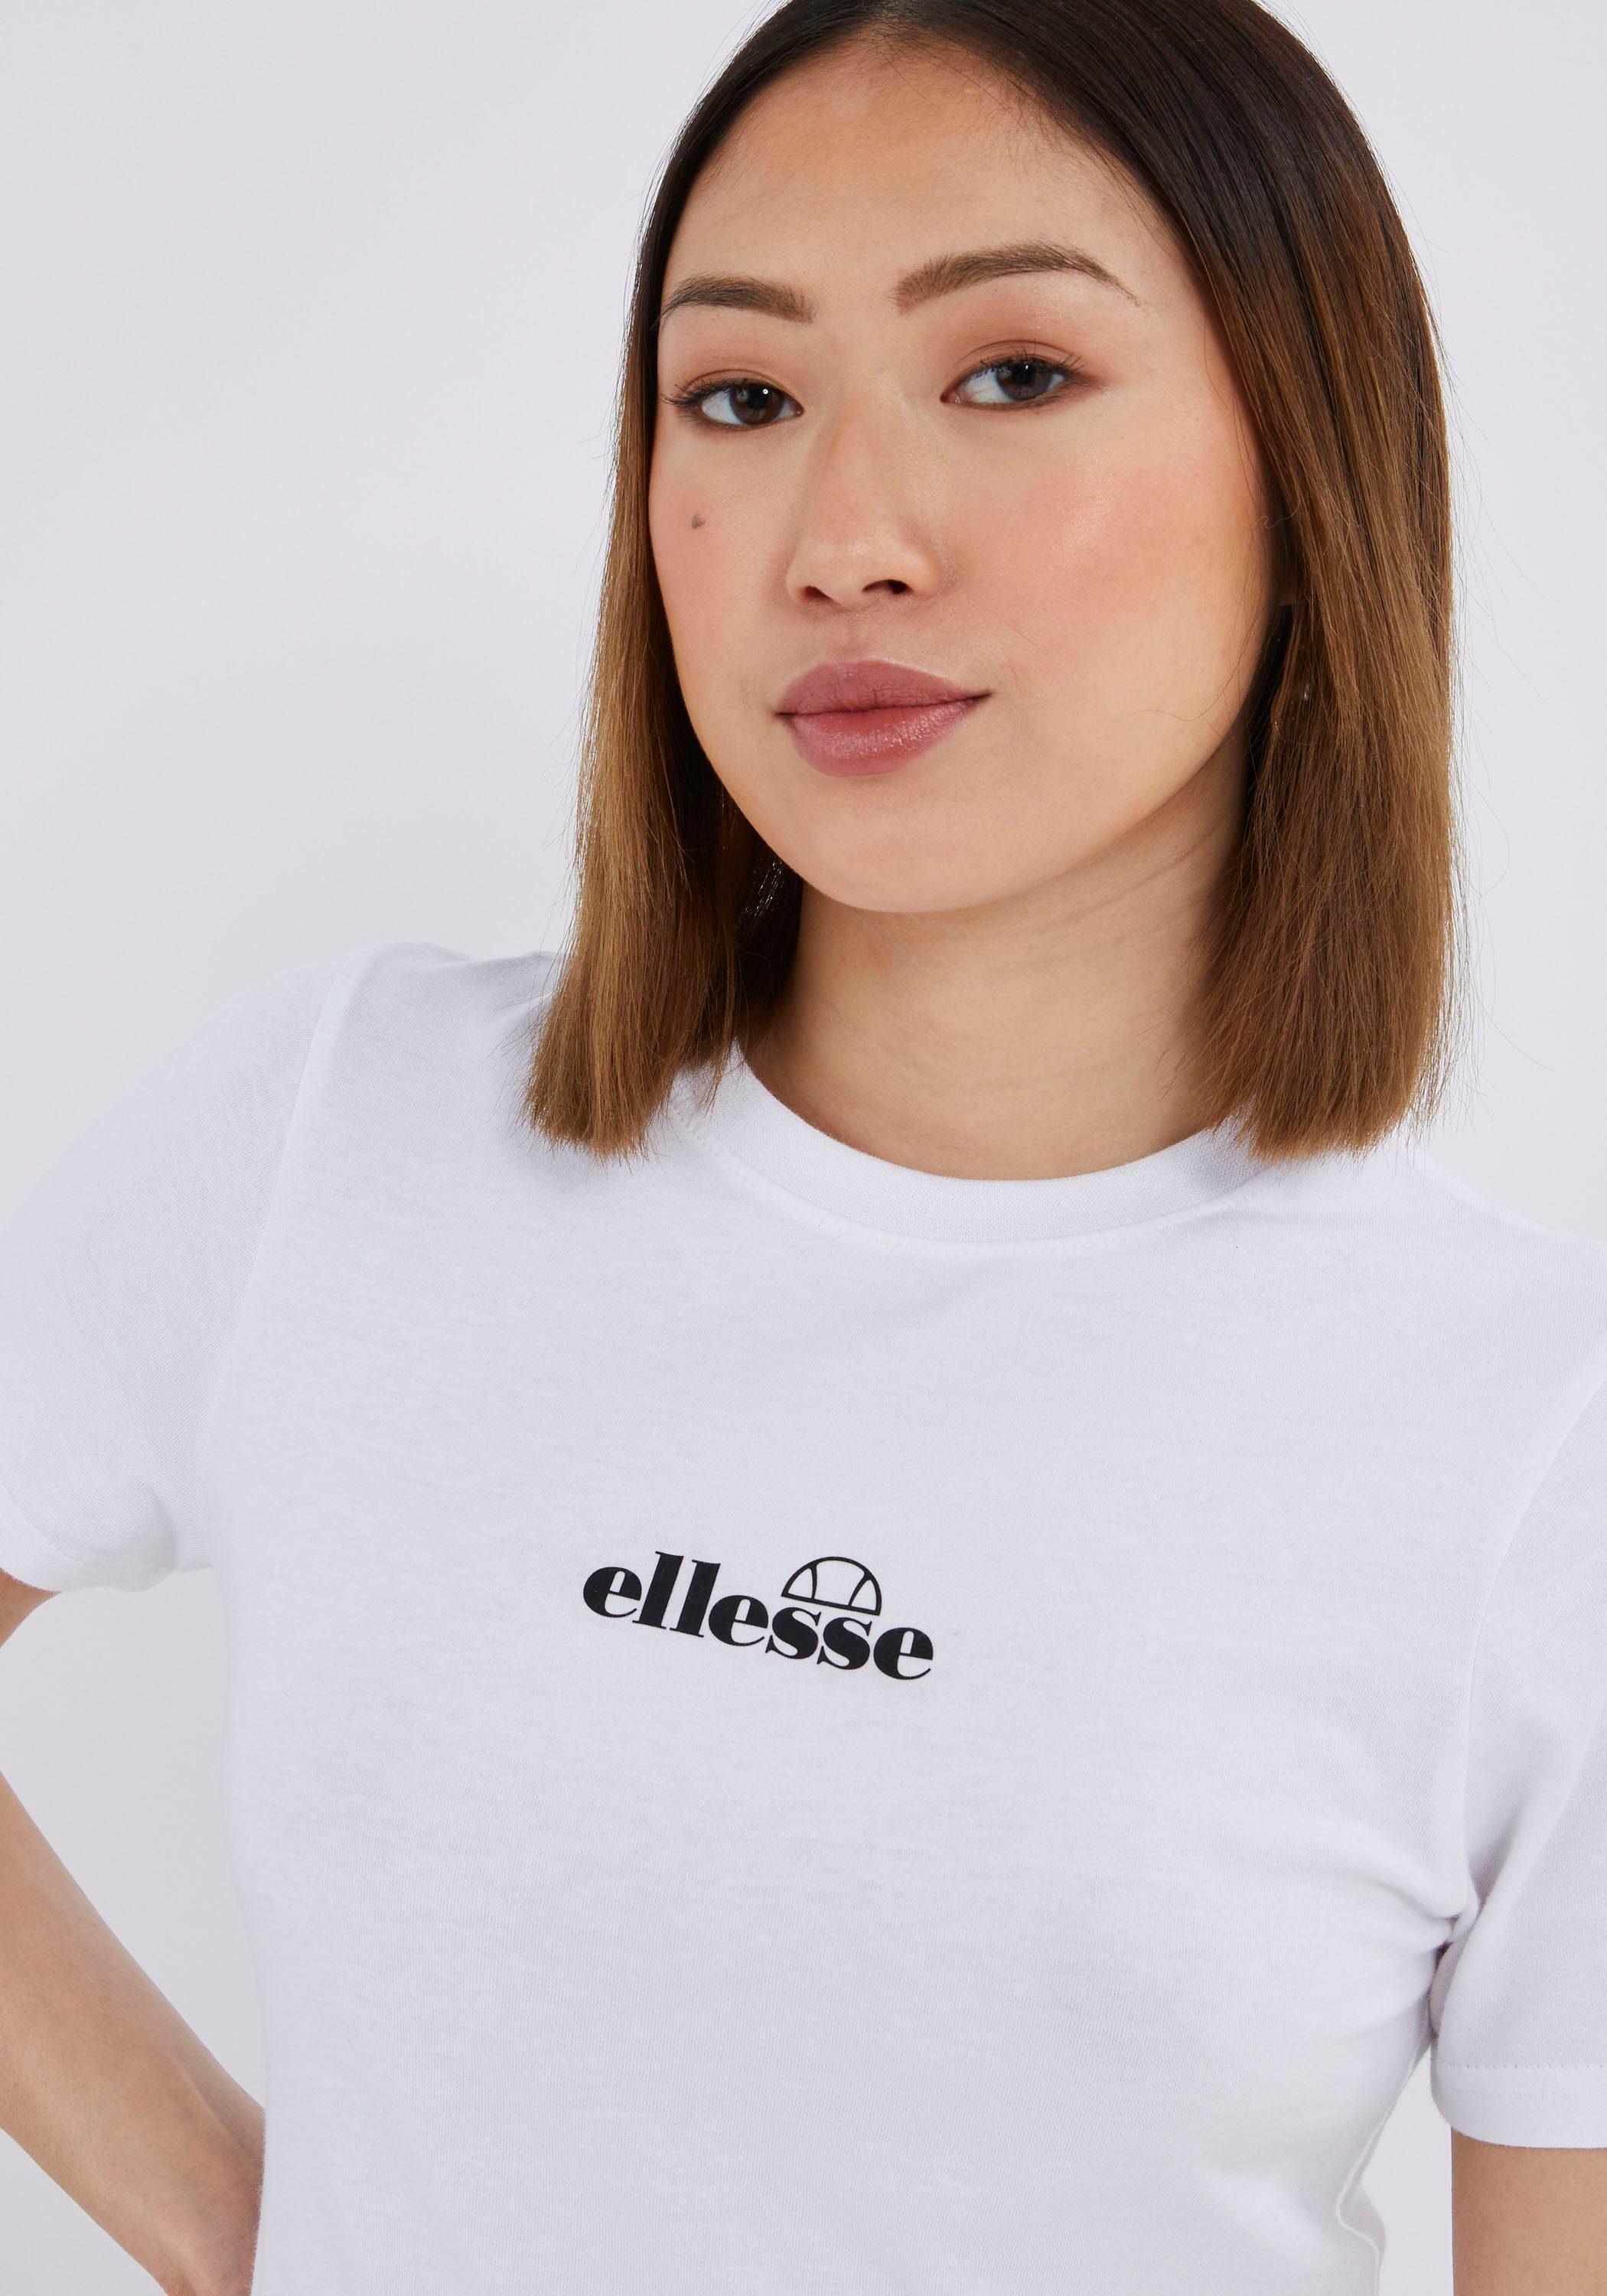 BECKANA Ellesse T-SHIRT white T-Shirt